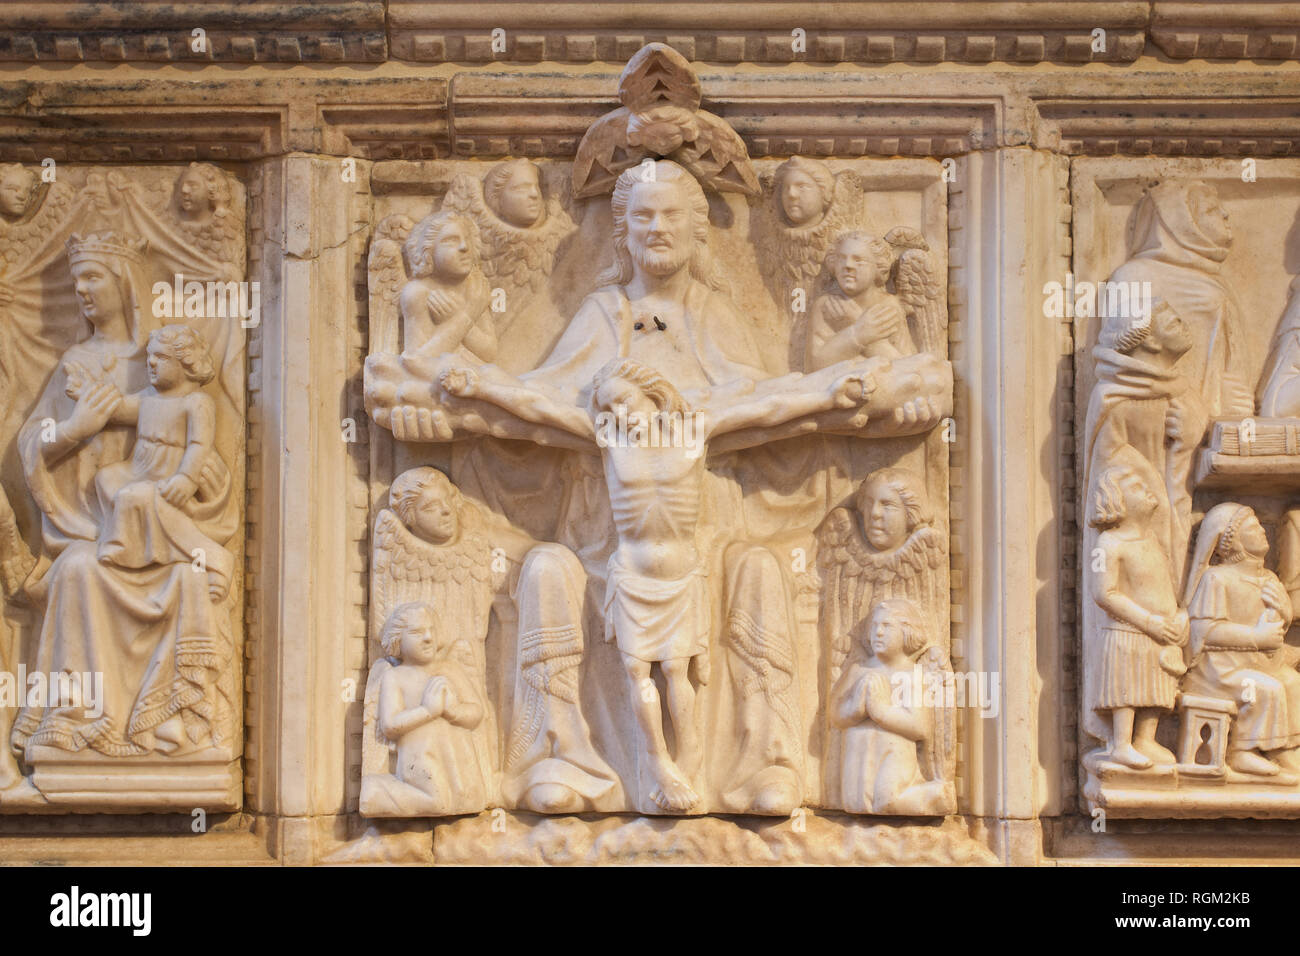 Risurrezione - Dio tenendo Gesù crocifisso in mano - dettaglio del Aliprandi il sarcofago (XIV C) - Chiesa di San Marco - Milano Foto Stock